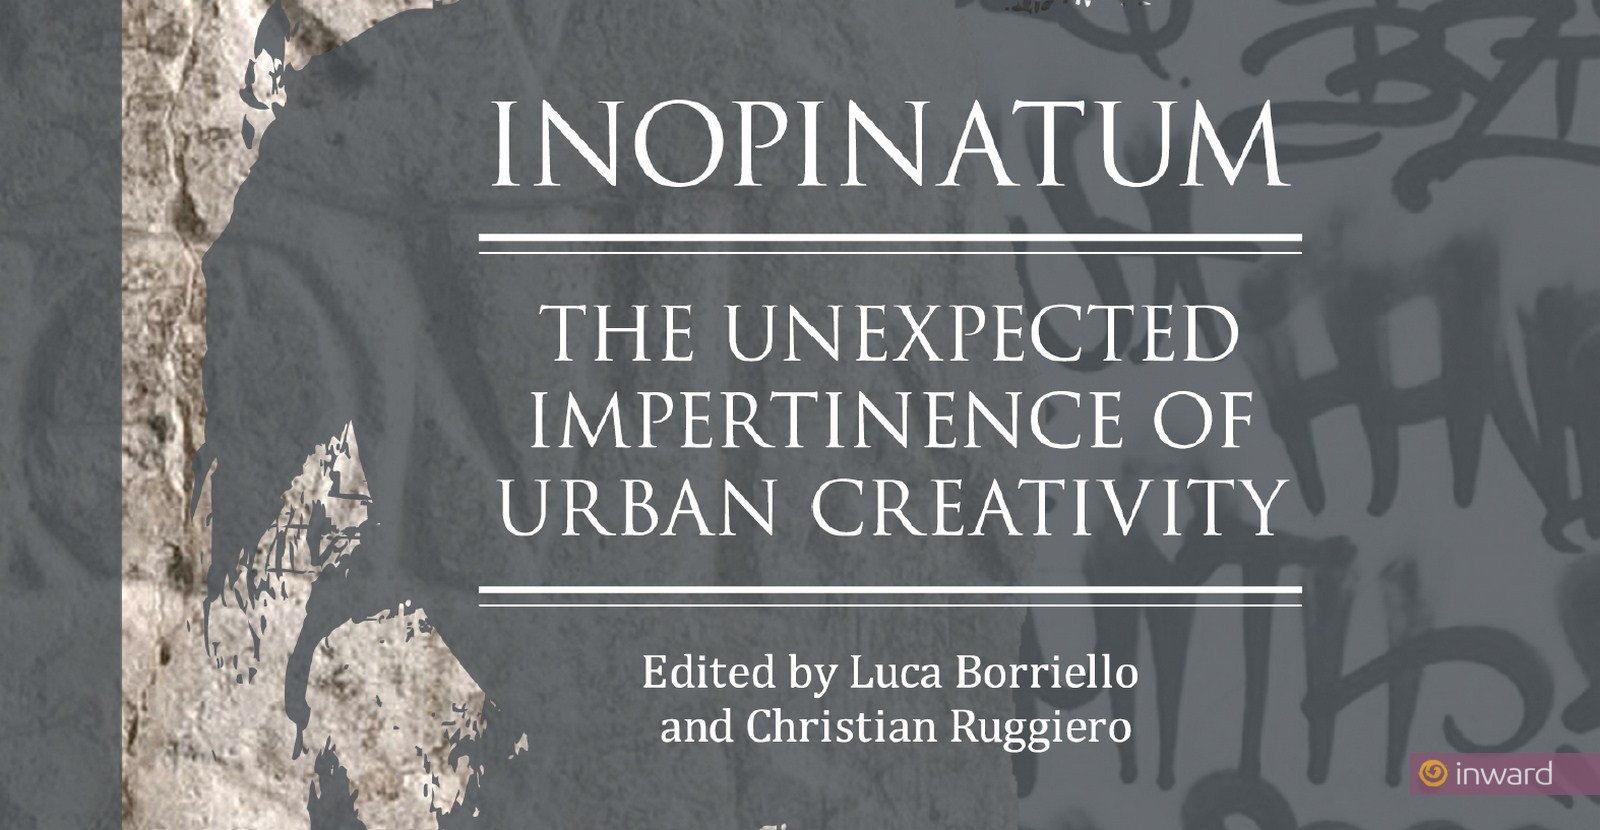 Inopinatum Centro Studi sulla Creatività Urbana